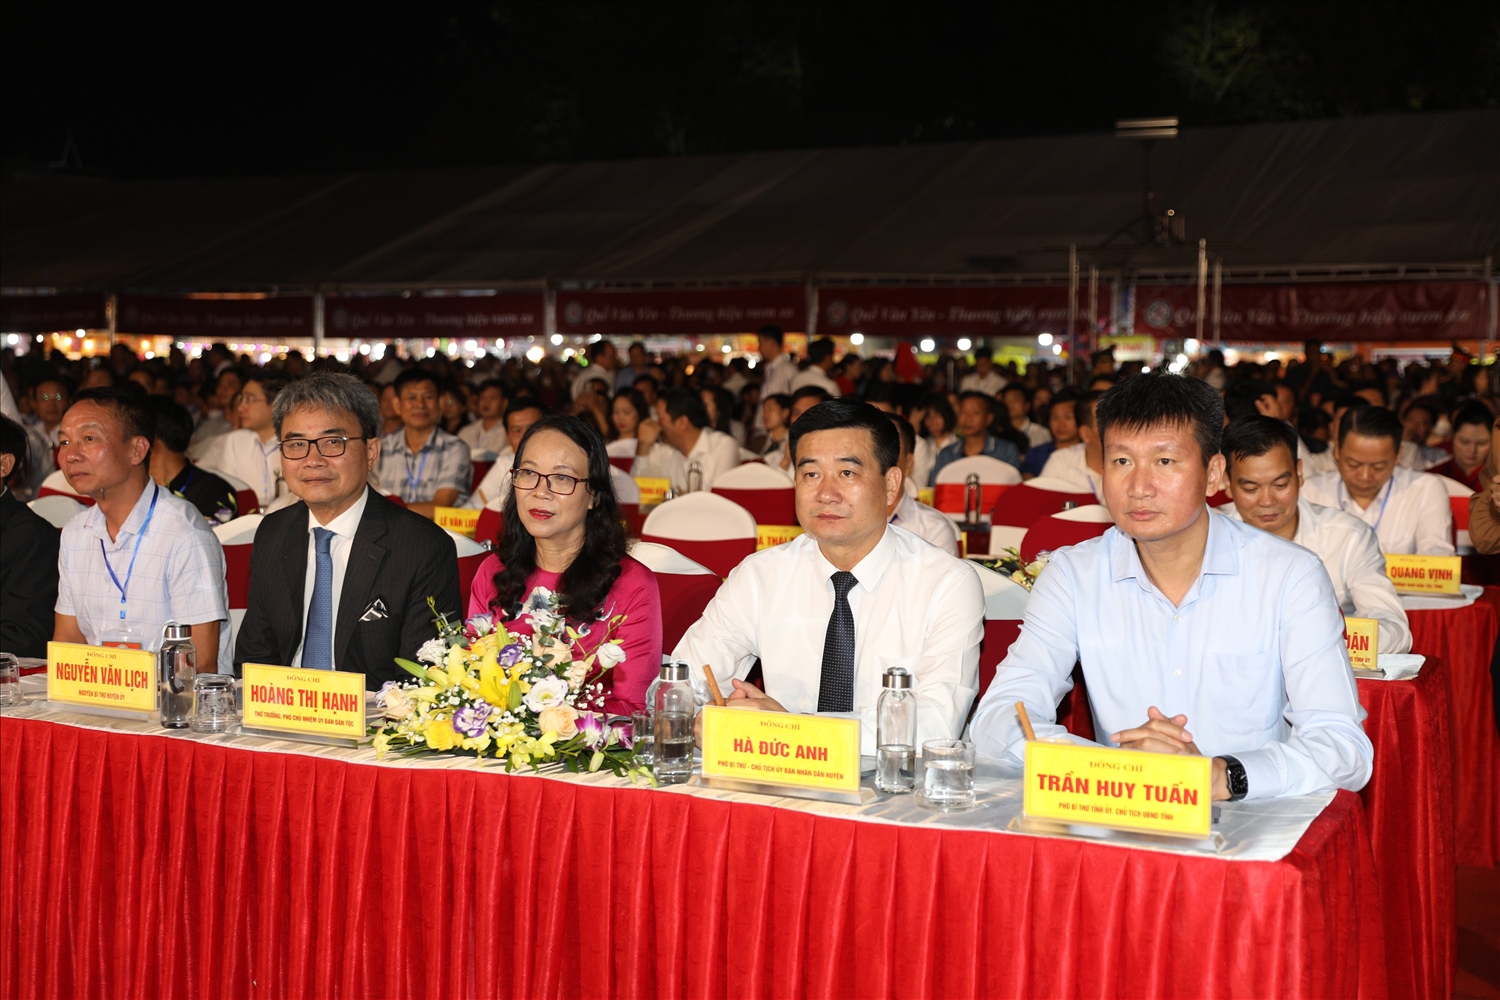 Thứ trưởng, Phó Chủ nhiệm Ủy ban Dân tộc Hoàng Thị Hạnh cùng các đại biểu tham dự buổi lễ.